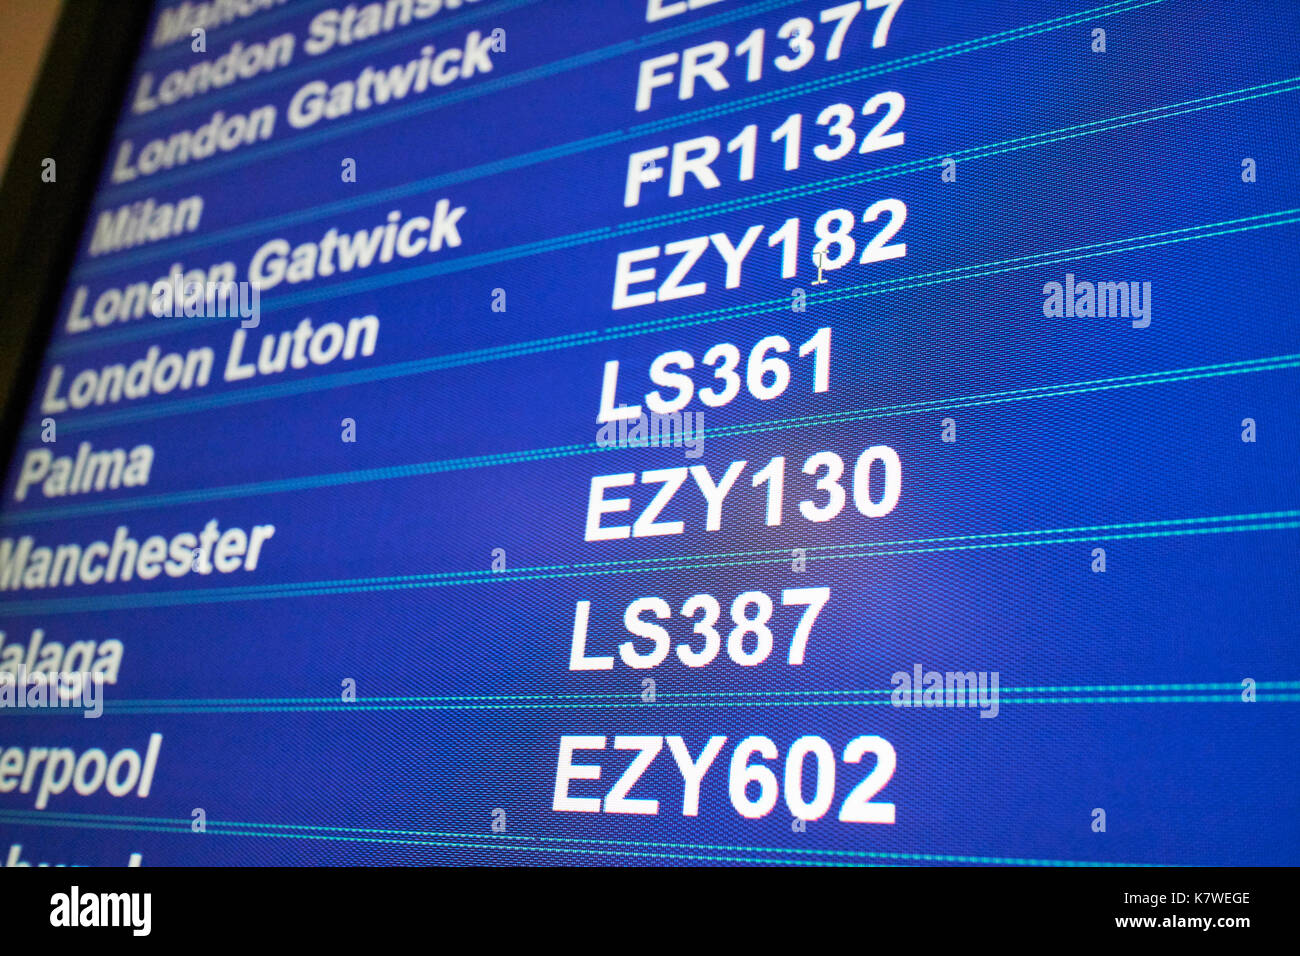 Pantalla que muestra información de vuelos del aeropuerto destinos códigos de línea aérea de bajo coste Ryanair y easyjet jet2 Foto de stock